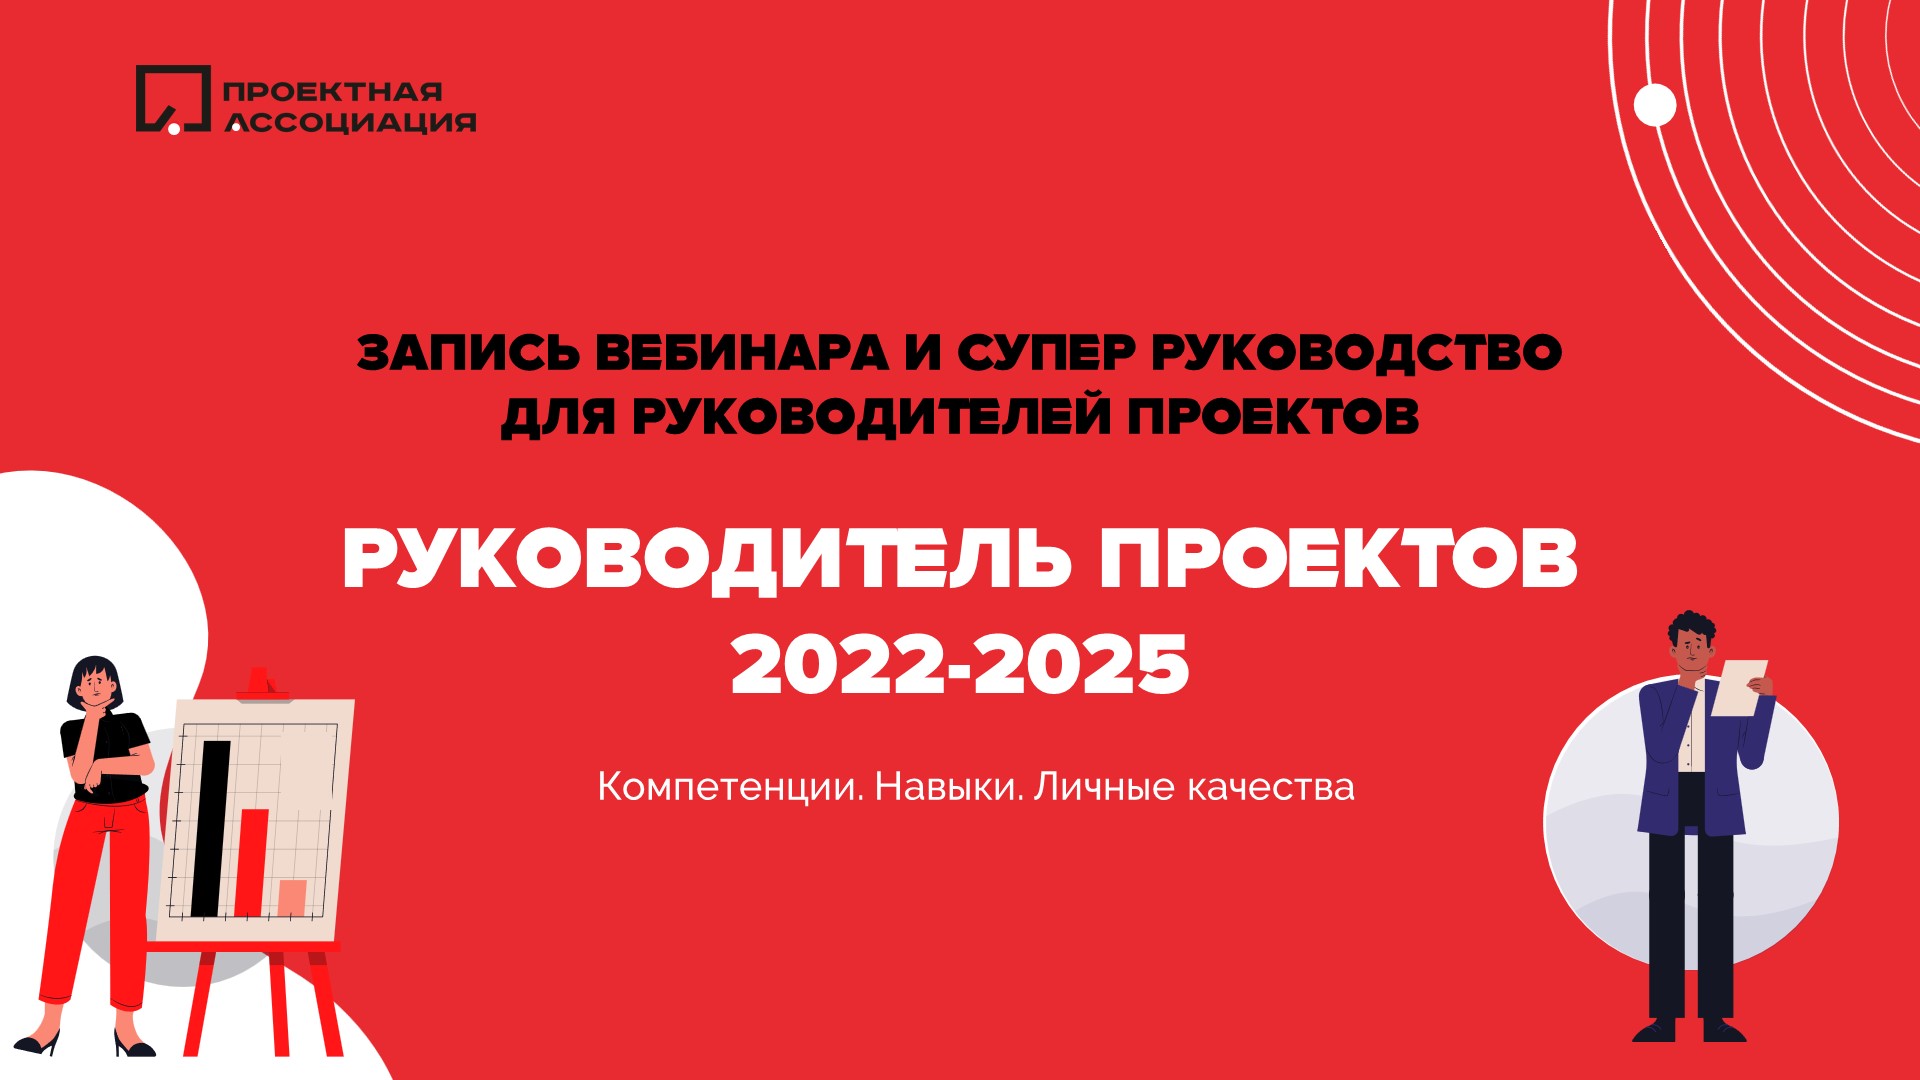 Руководитель проекта в 2022-2025: навыки, компетенции и личные качества